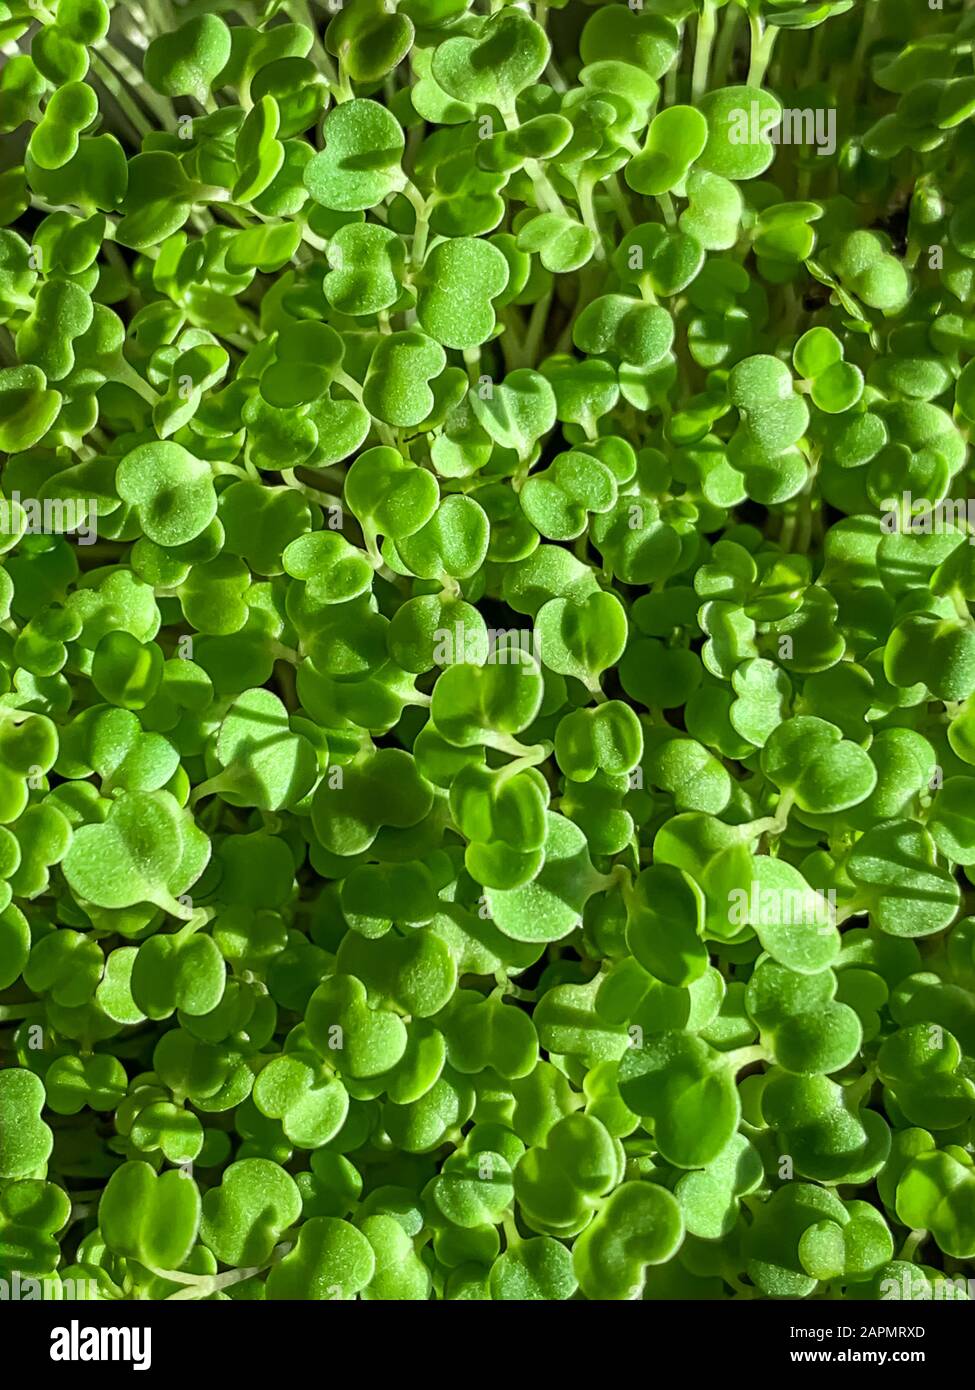 Arugula-Spross von oben, Makrolebensmittelfoto. Sproutingrakete, Eruca vesicaria, auch Gartenrakete genannt. Grüne Sämlinge und junge Pflanzen. Stockfoto